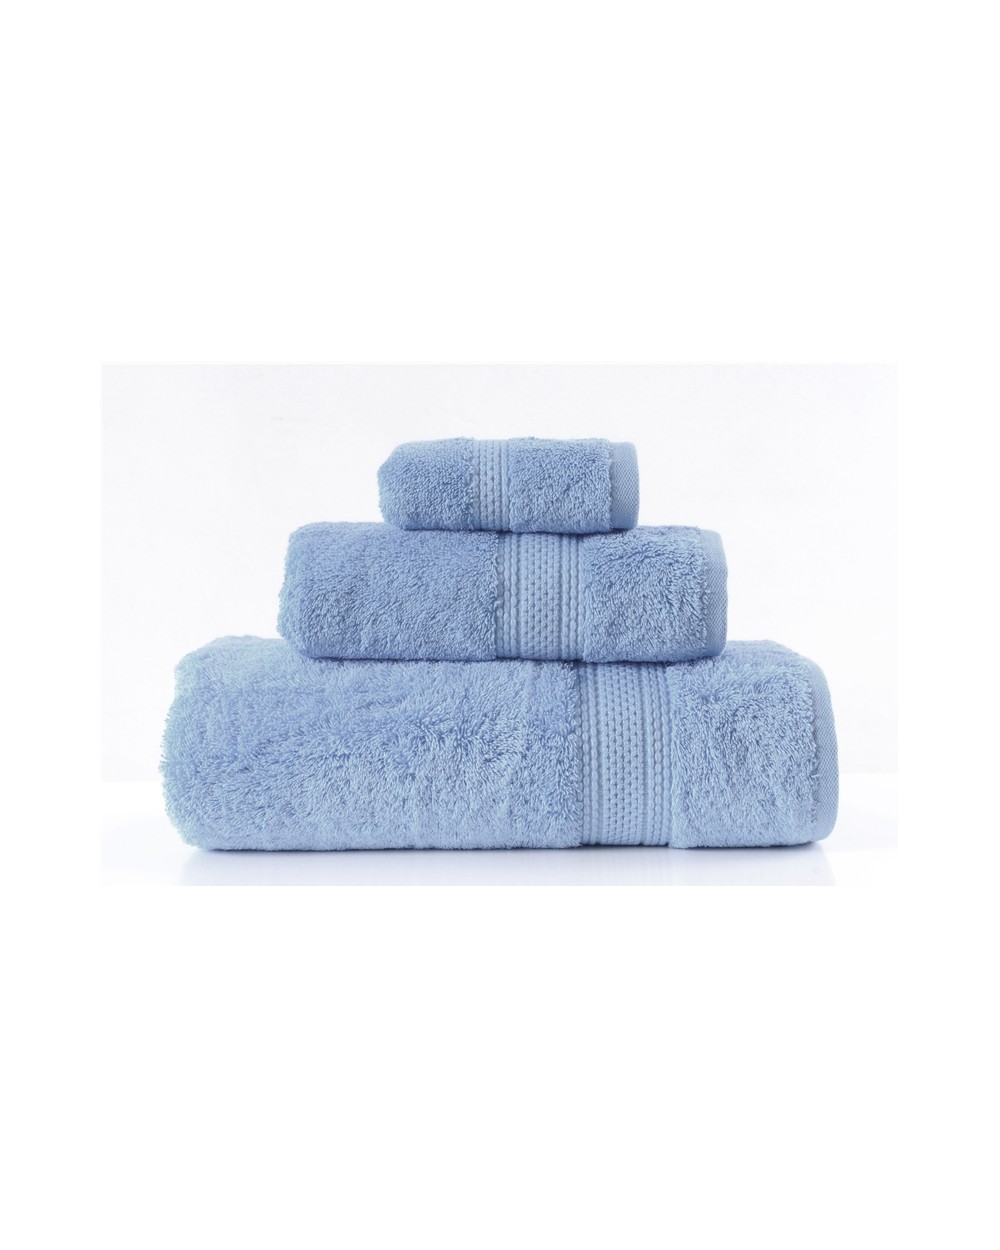 Ręcznik bawełna egipska 50x90 Egiptian Cotton baby blue Greno